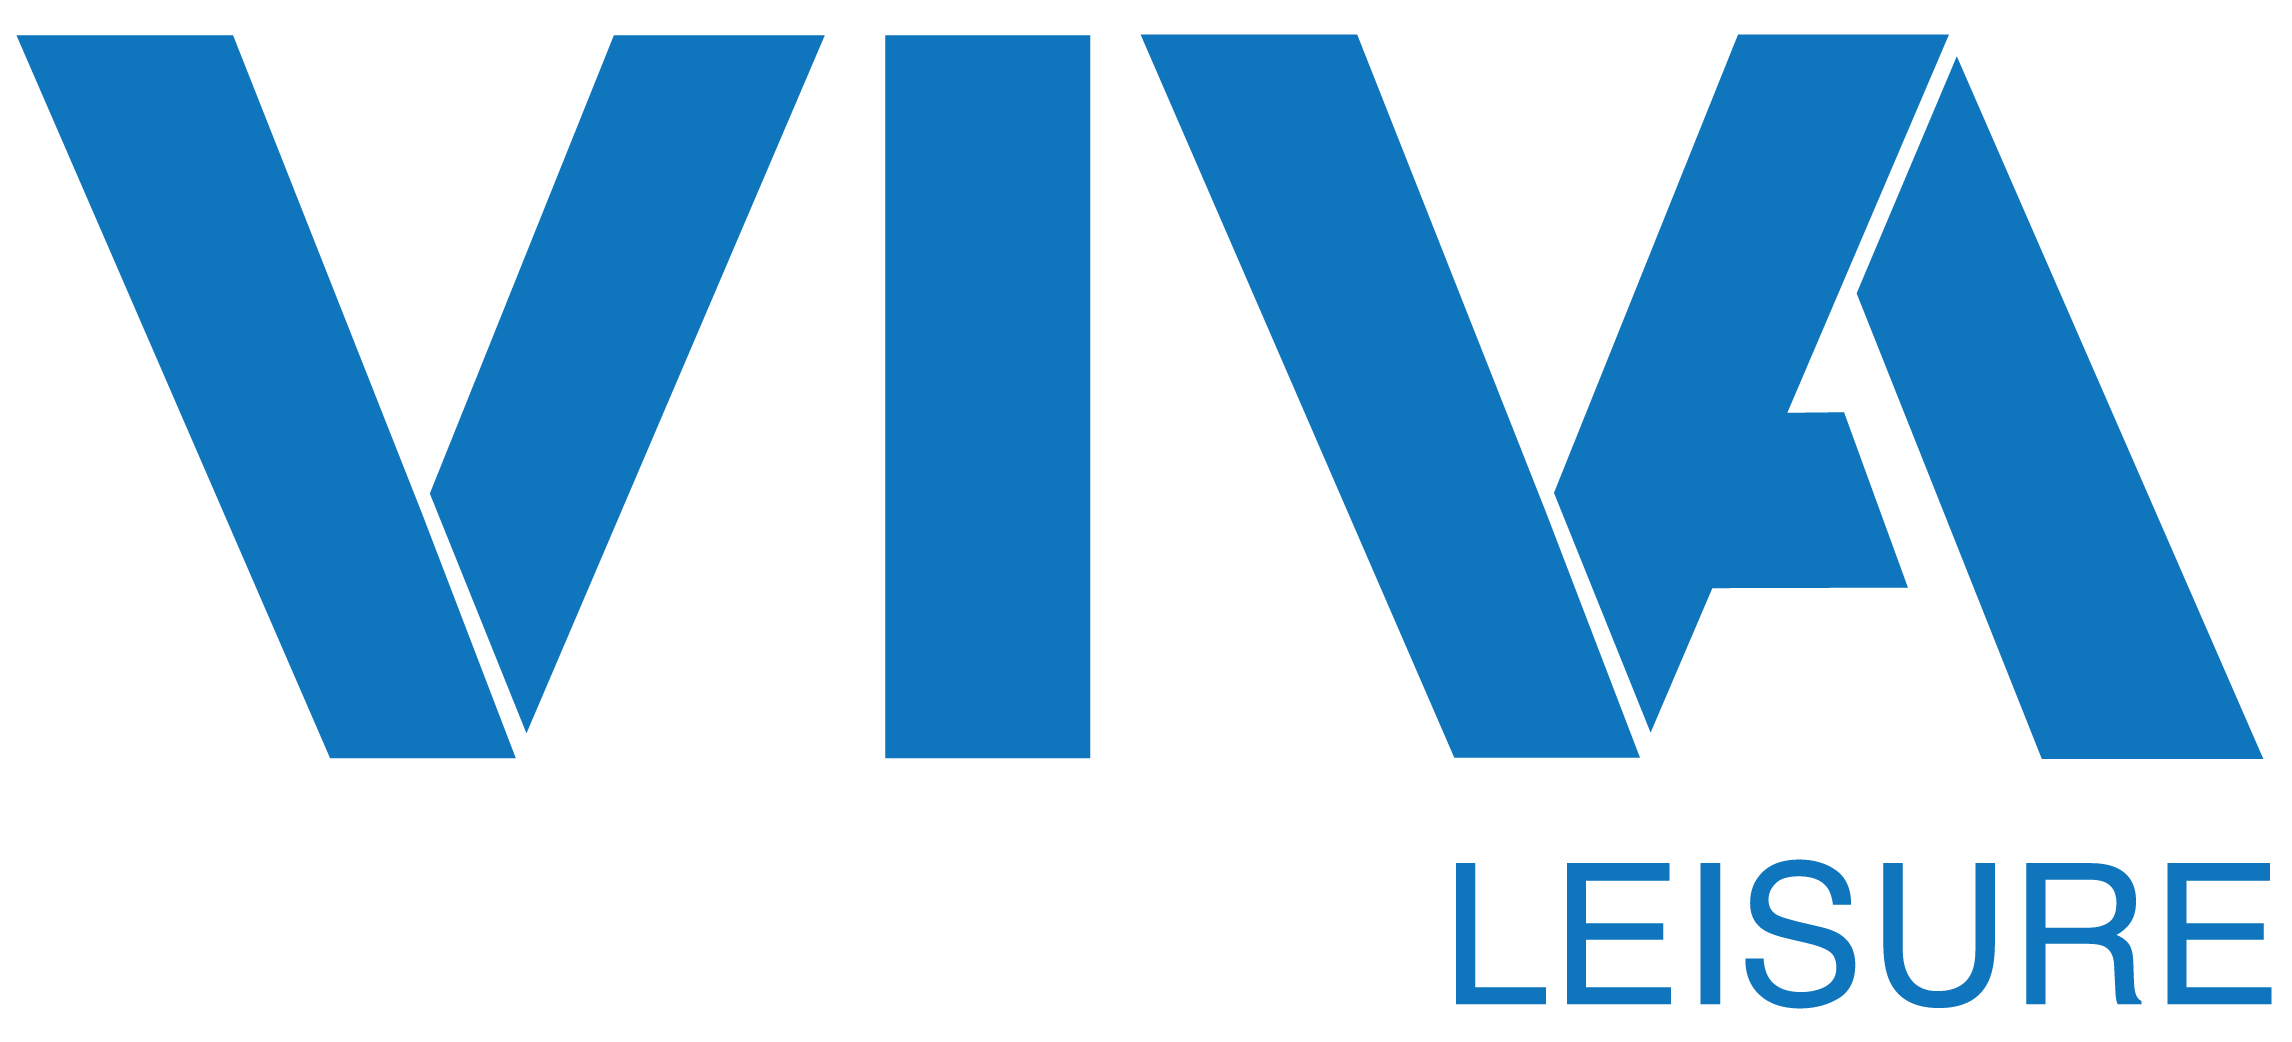 Viva Leisure Limited Logo